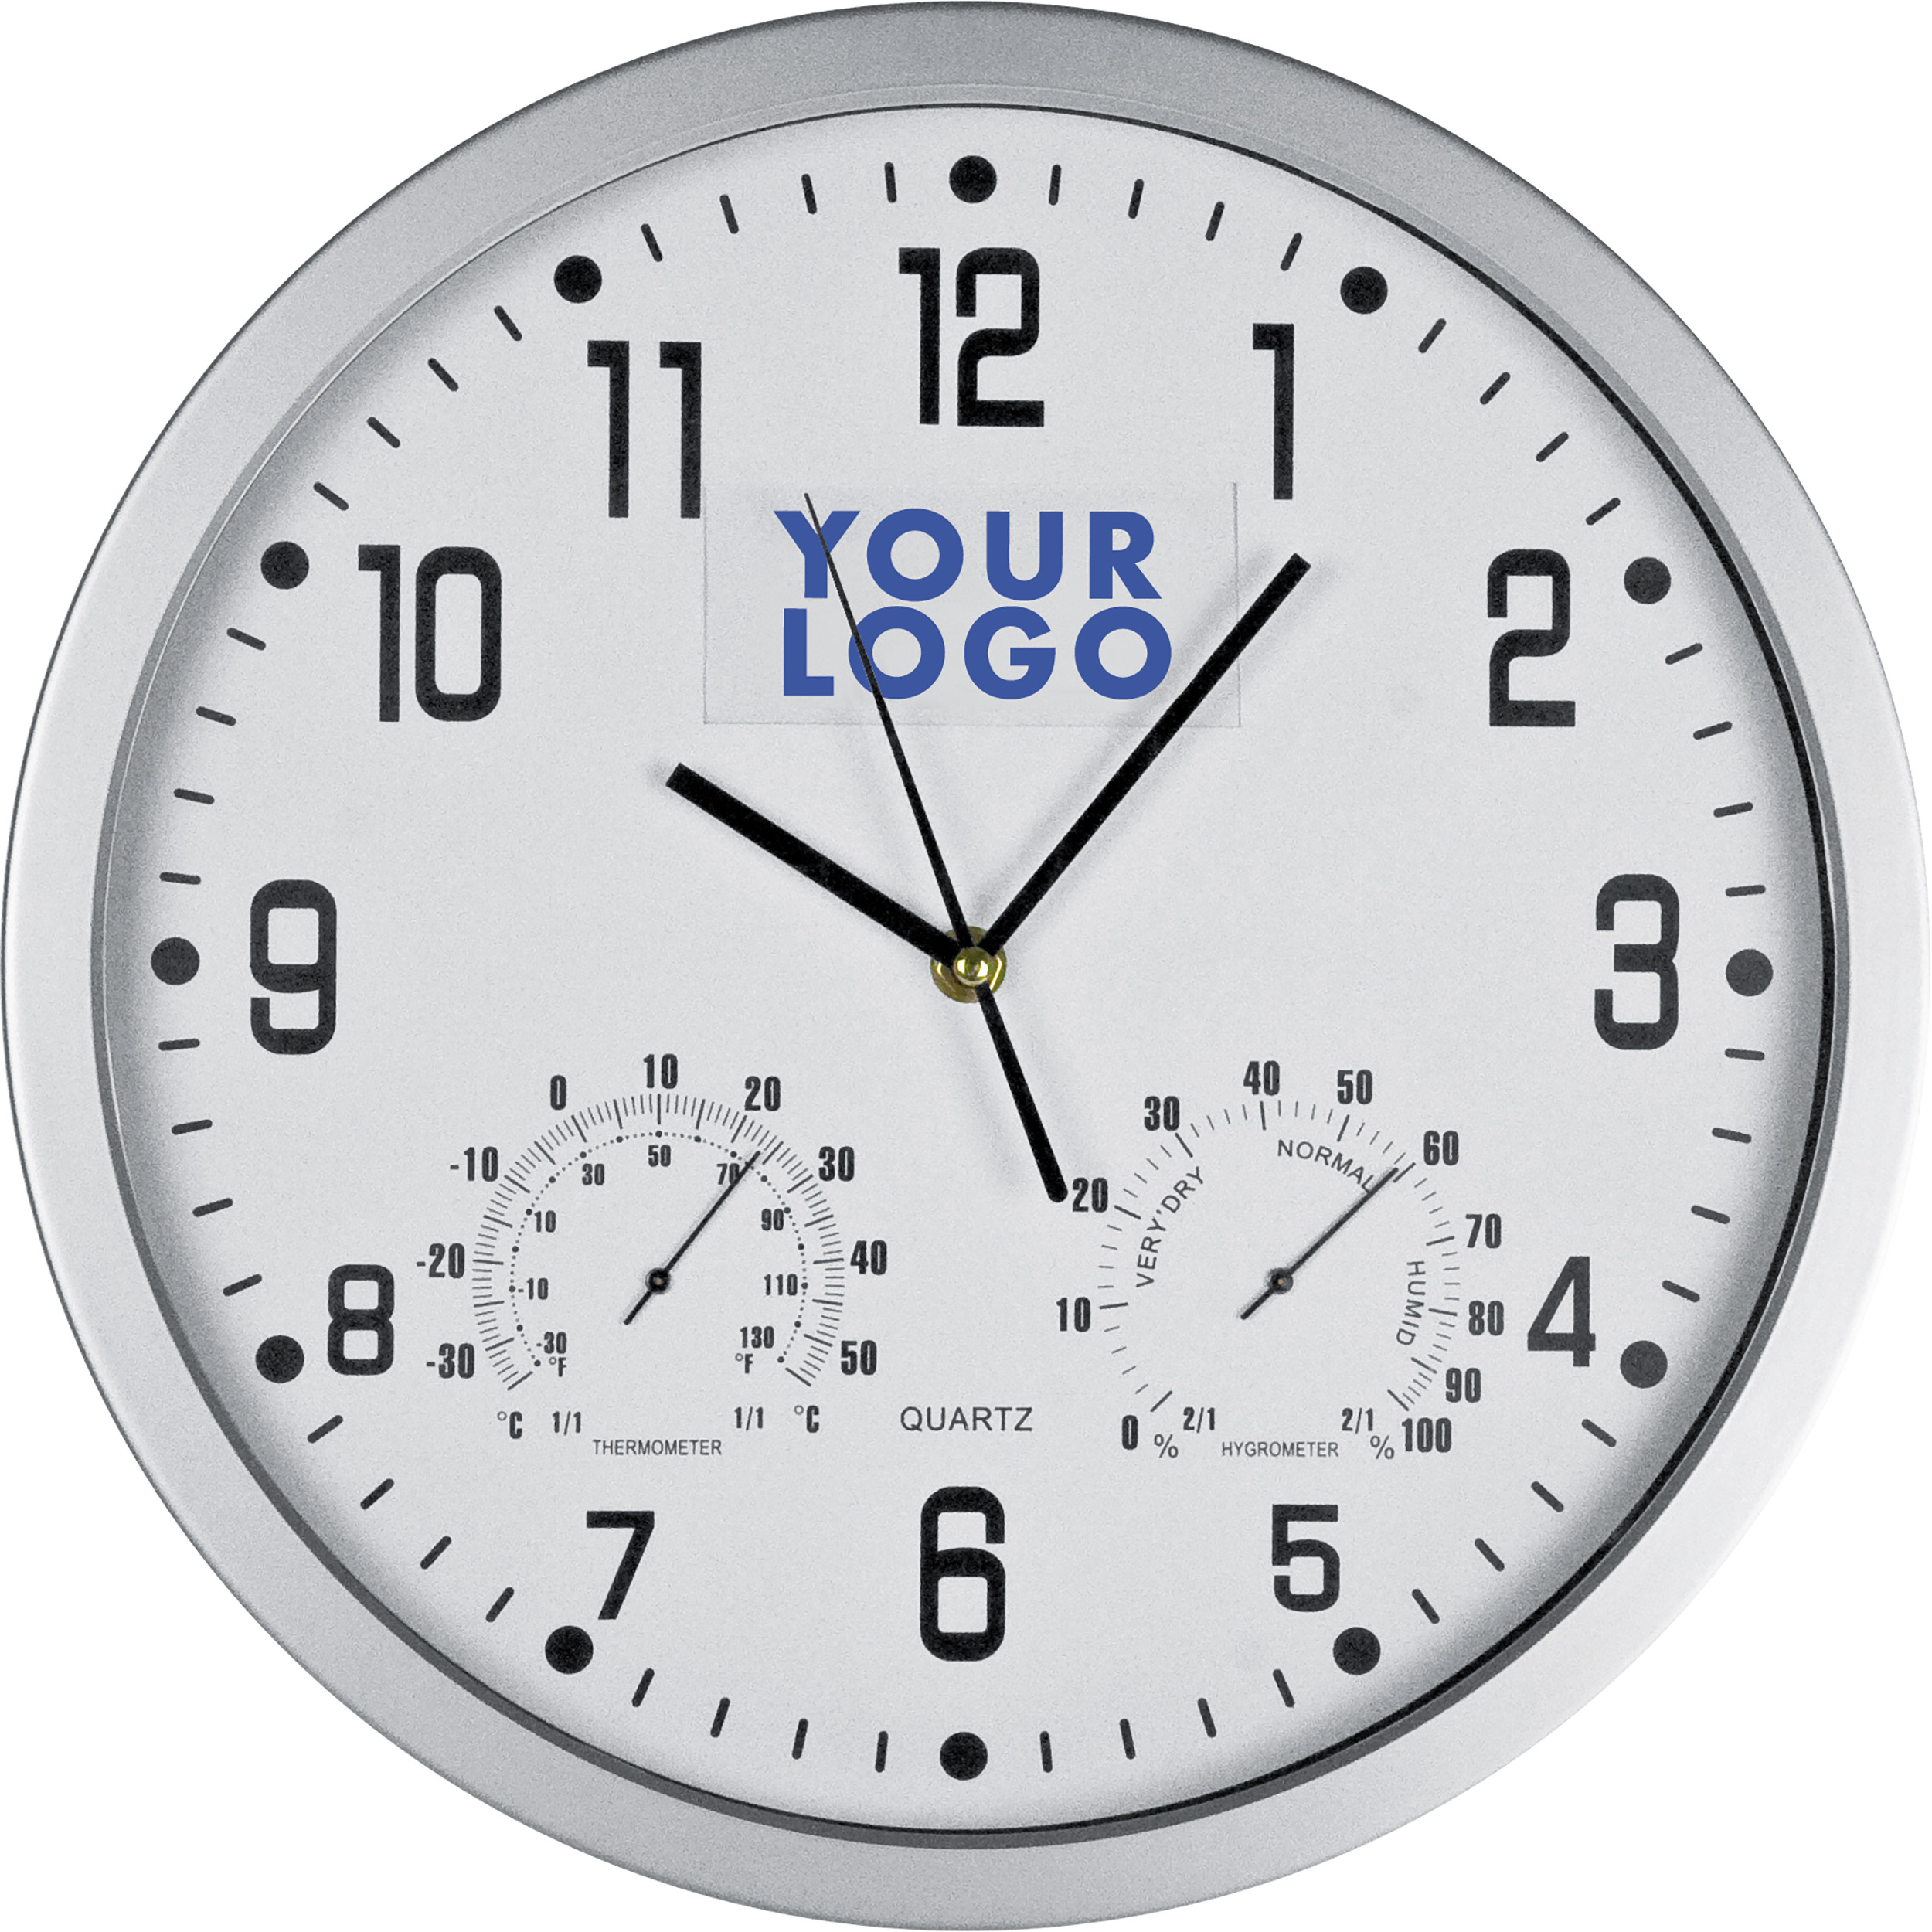 Надпись на циферблате часов. Часы настенные Tempus fugit. Часы настенные Insert 2, белые. Часы настенные Масма Олимп с термометром и гигрометром. Часы настенные с термометром и гигрометром b&s SHC-301 CSP (W).